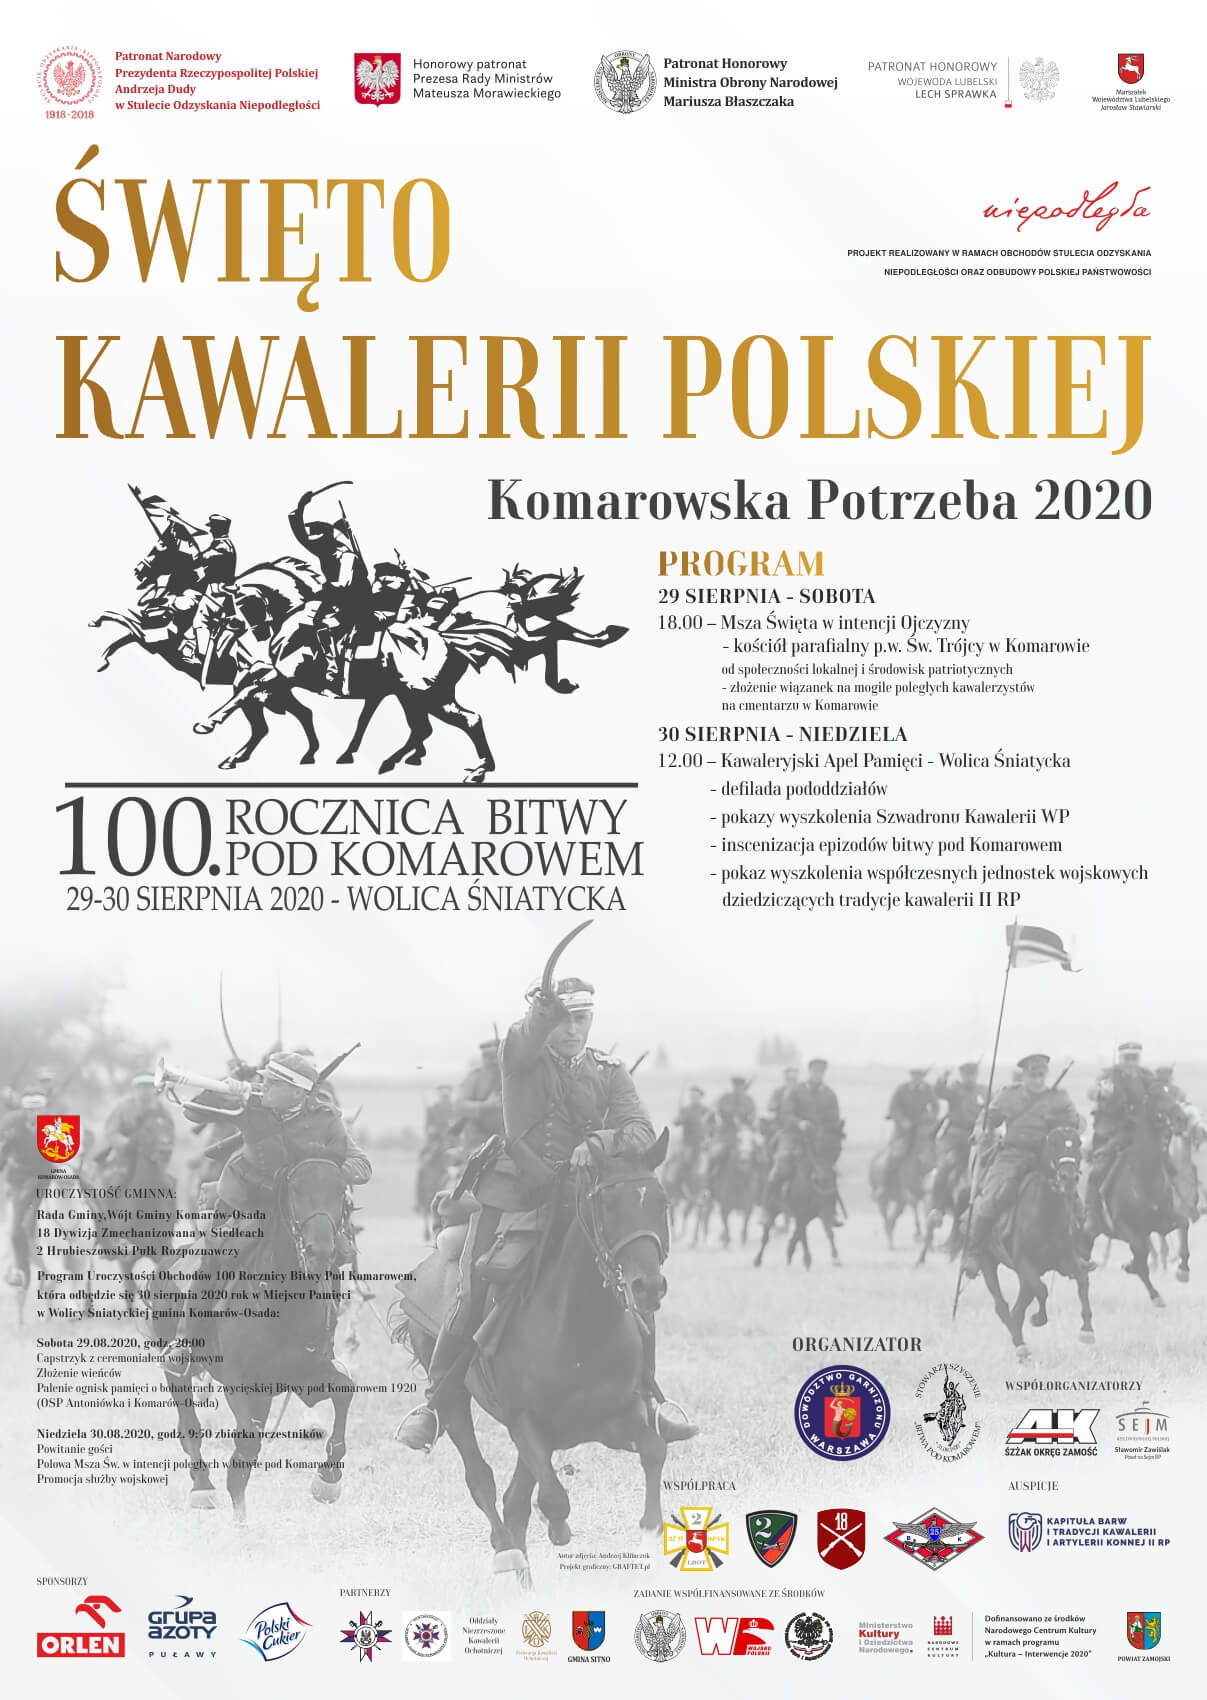 100 Rocznica Bitwy Pod Komarowem Święto Kawalerii Polskiej